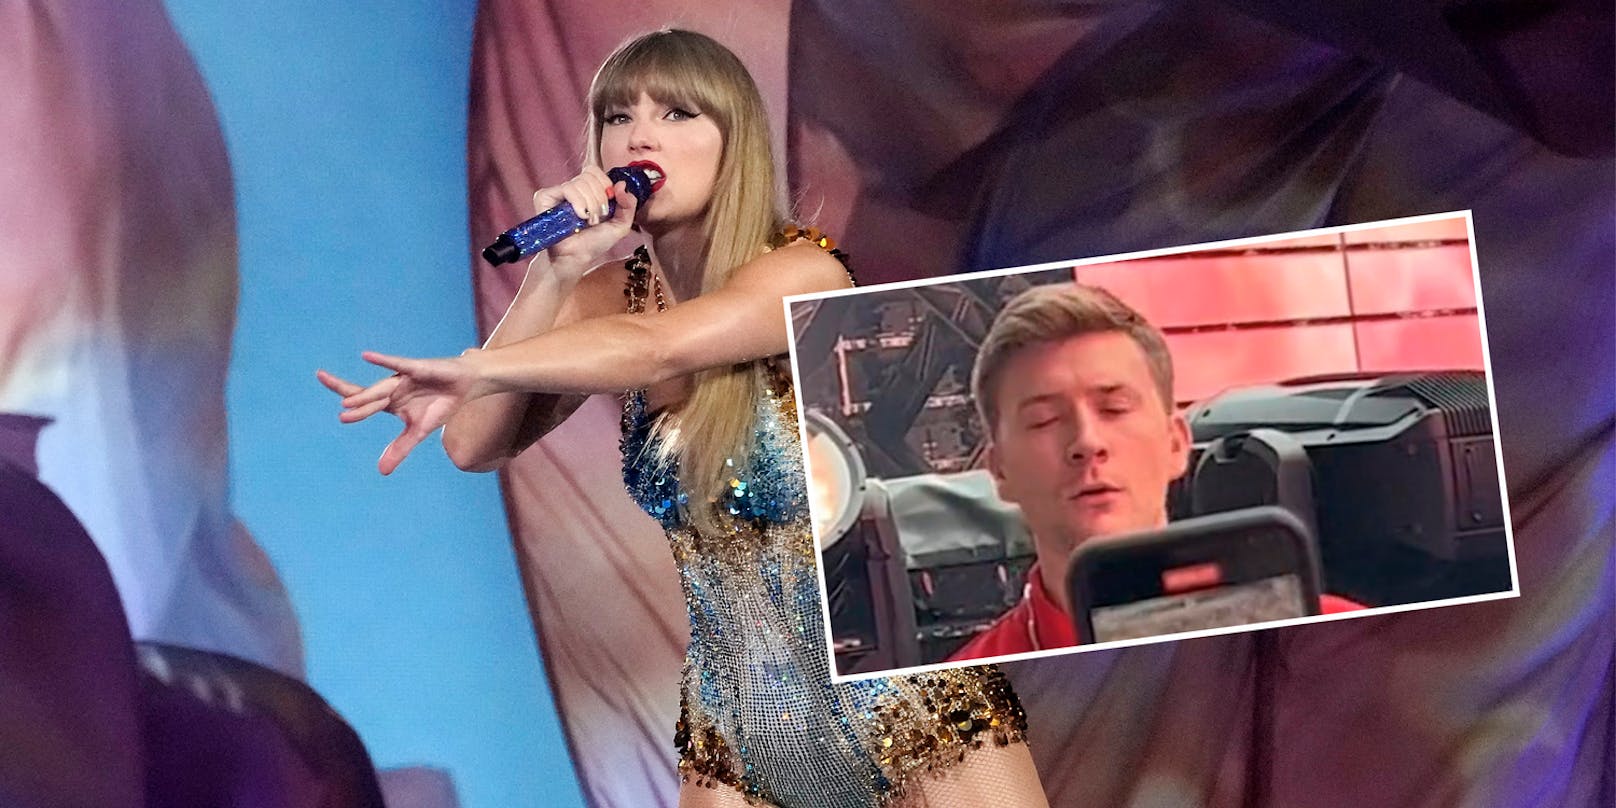 Security singt bei Taylor Swift mit – und wird gefeuert